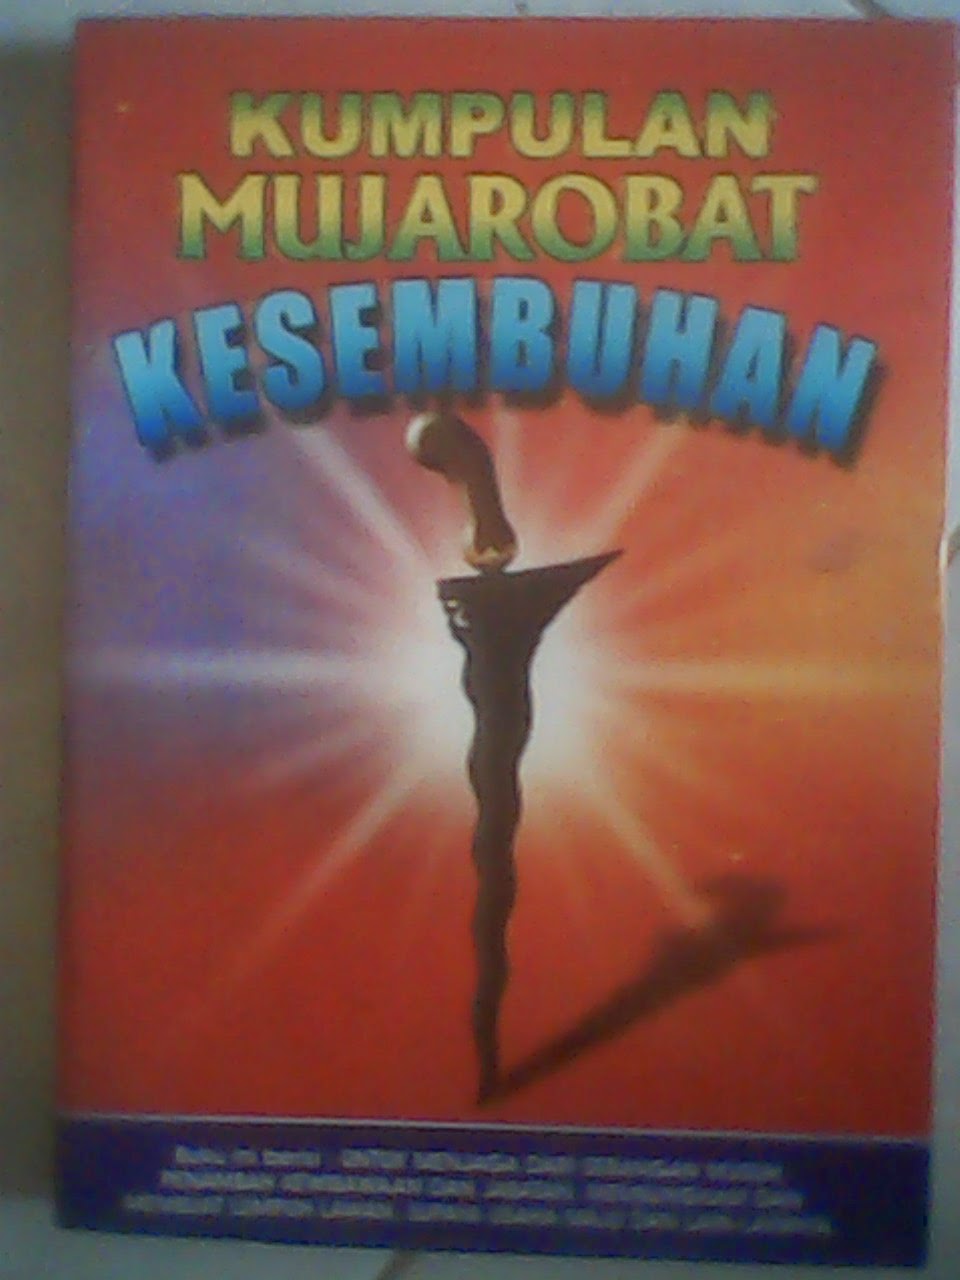 download buku mujarobat